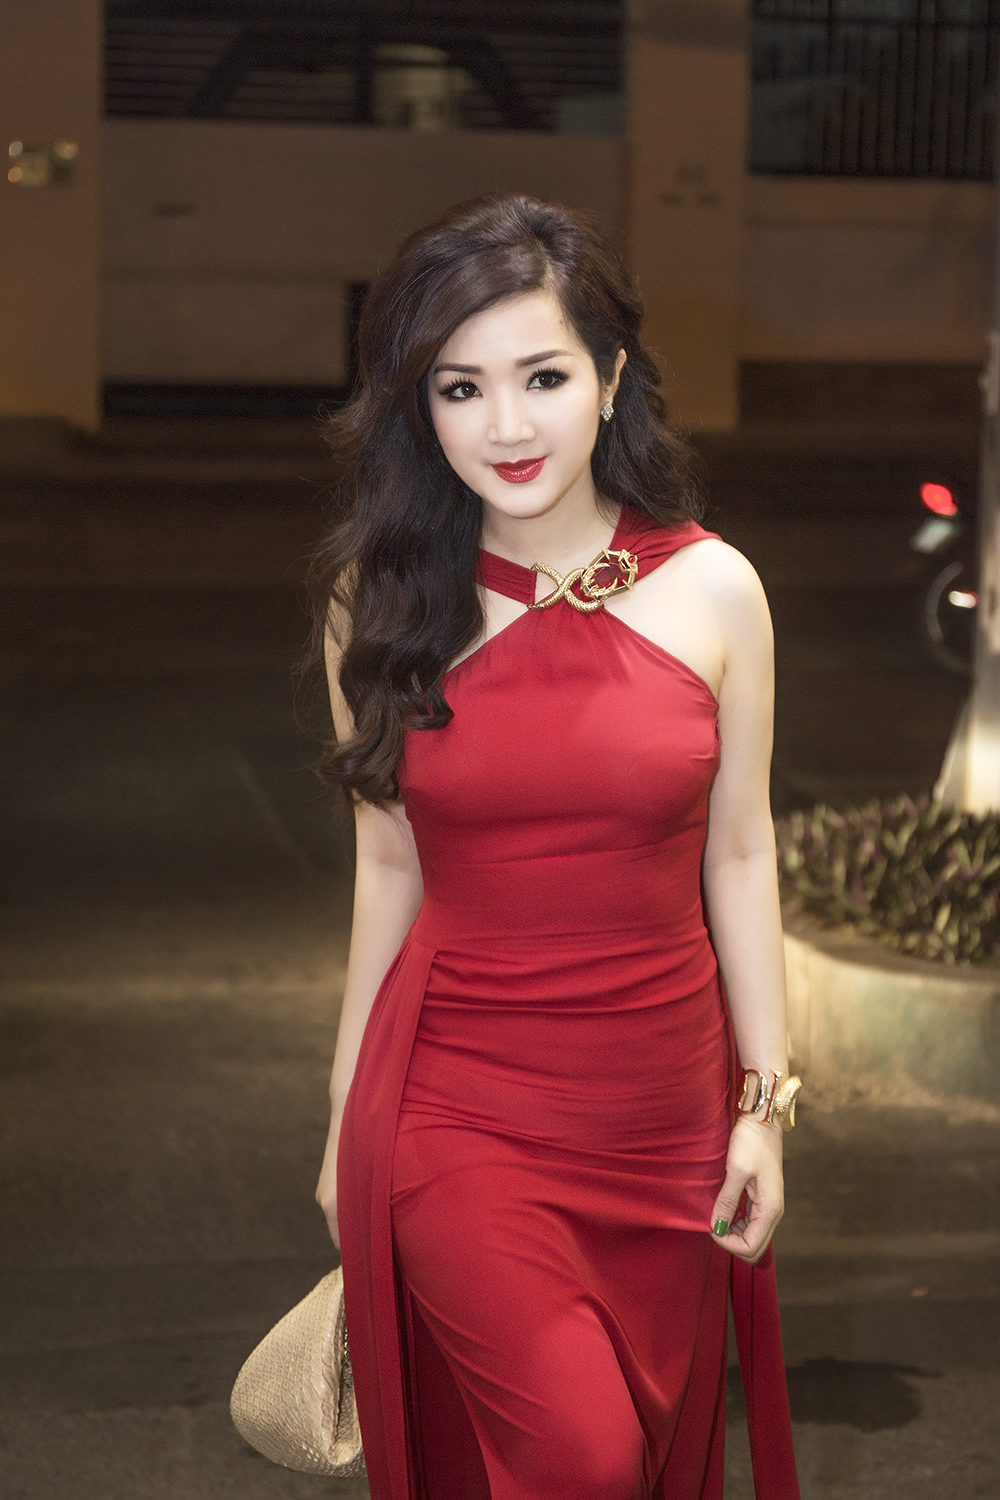 Hoa hậu không tuổi xuất hiện sang trọng và nổi bật với chiêc đầm dạ hội màu đỏ rực.